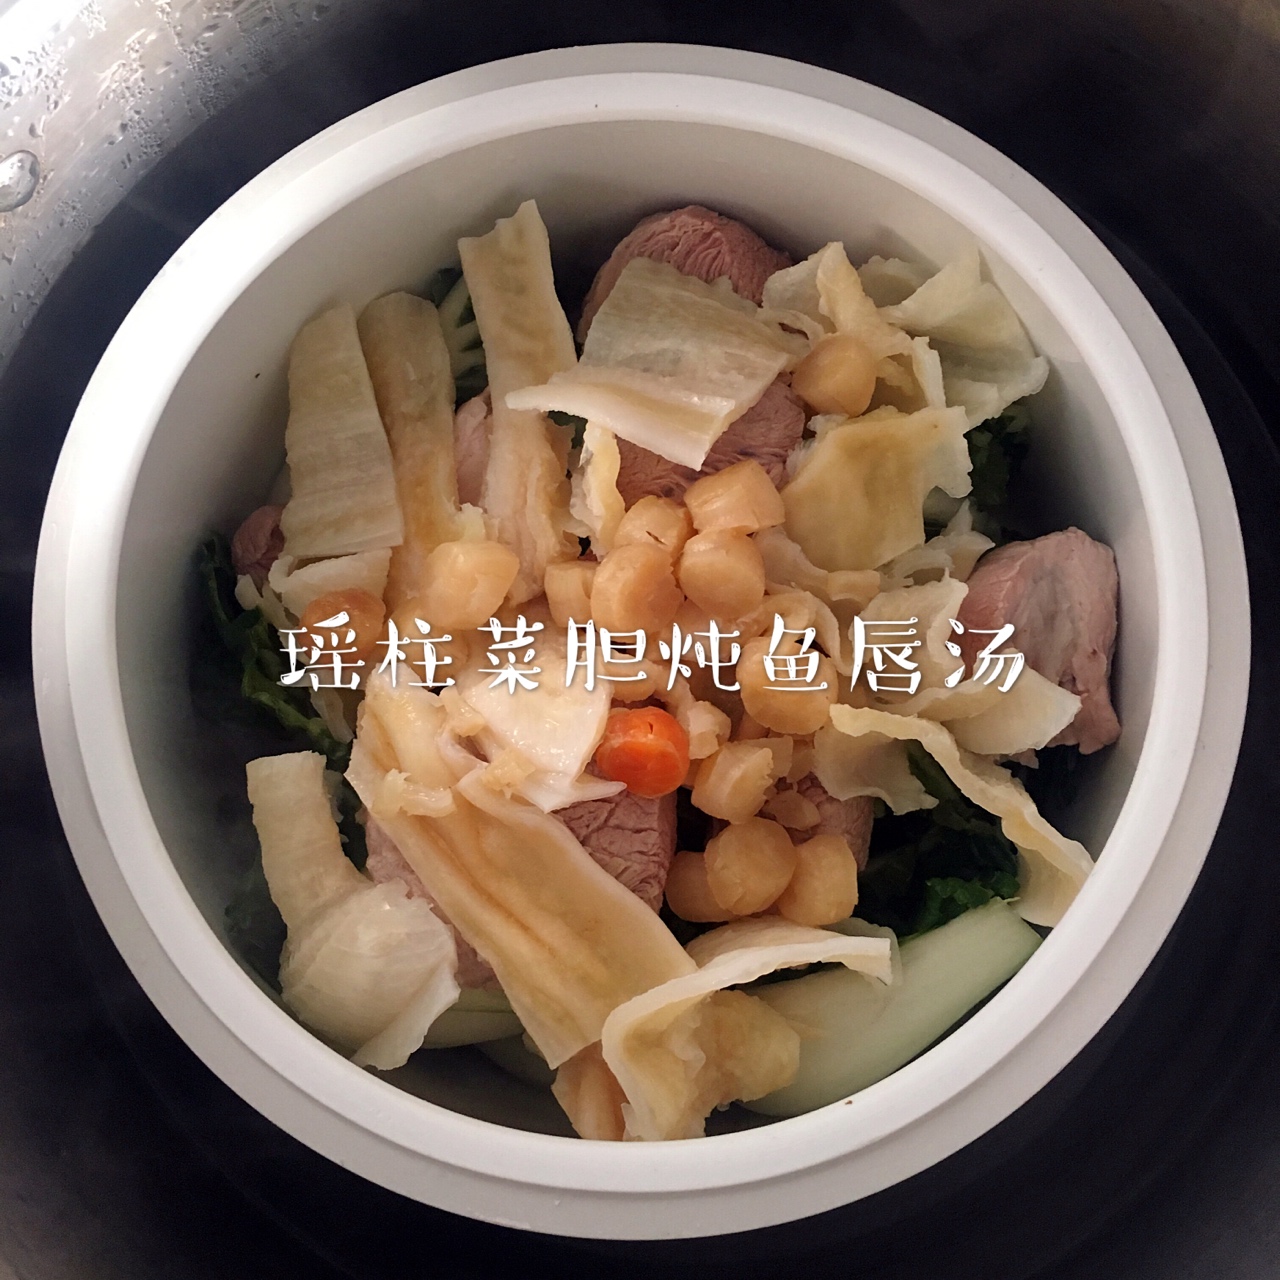 瑶柱菜胆炖鱼唇汤的做法